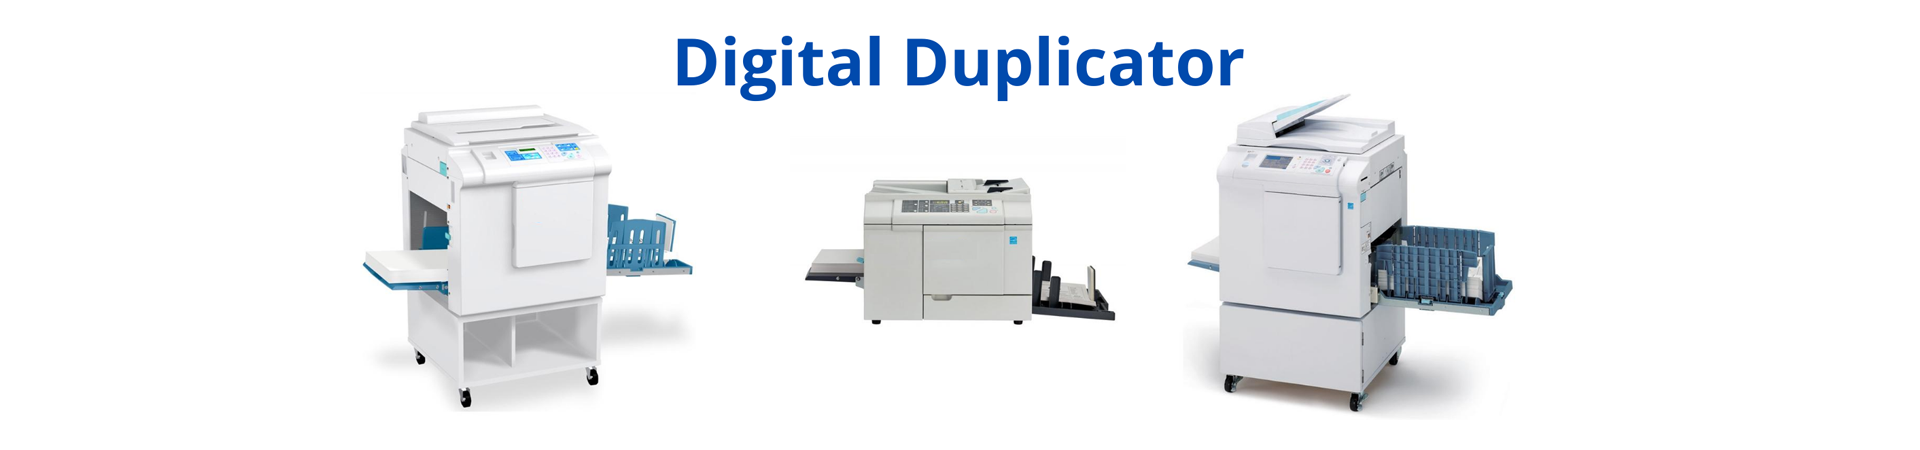 digital_duplicator_banner